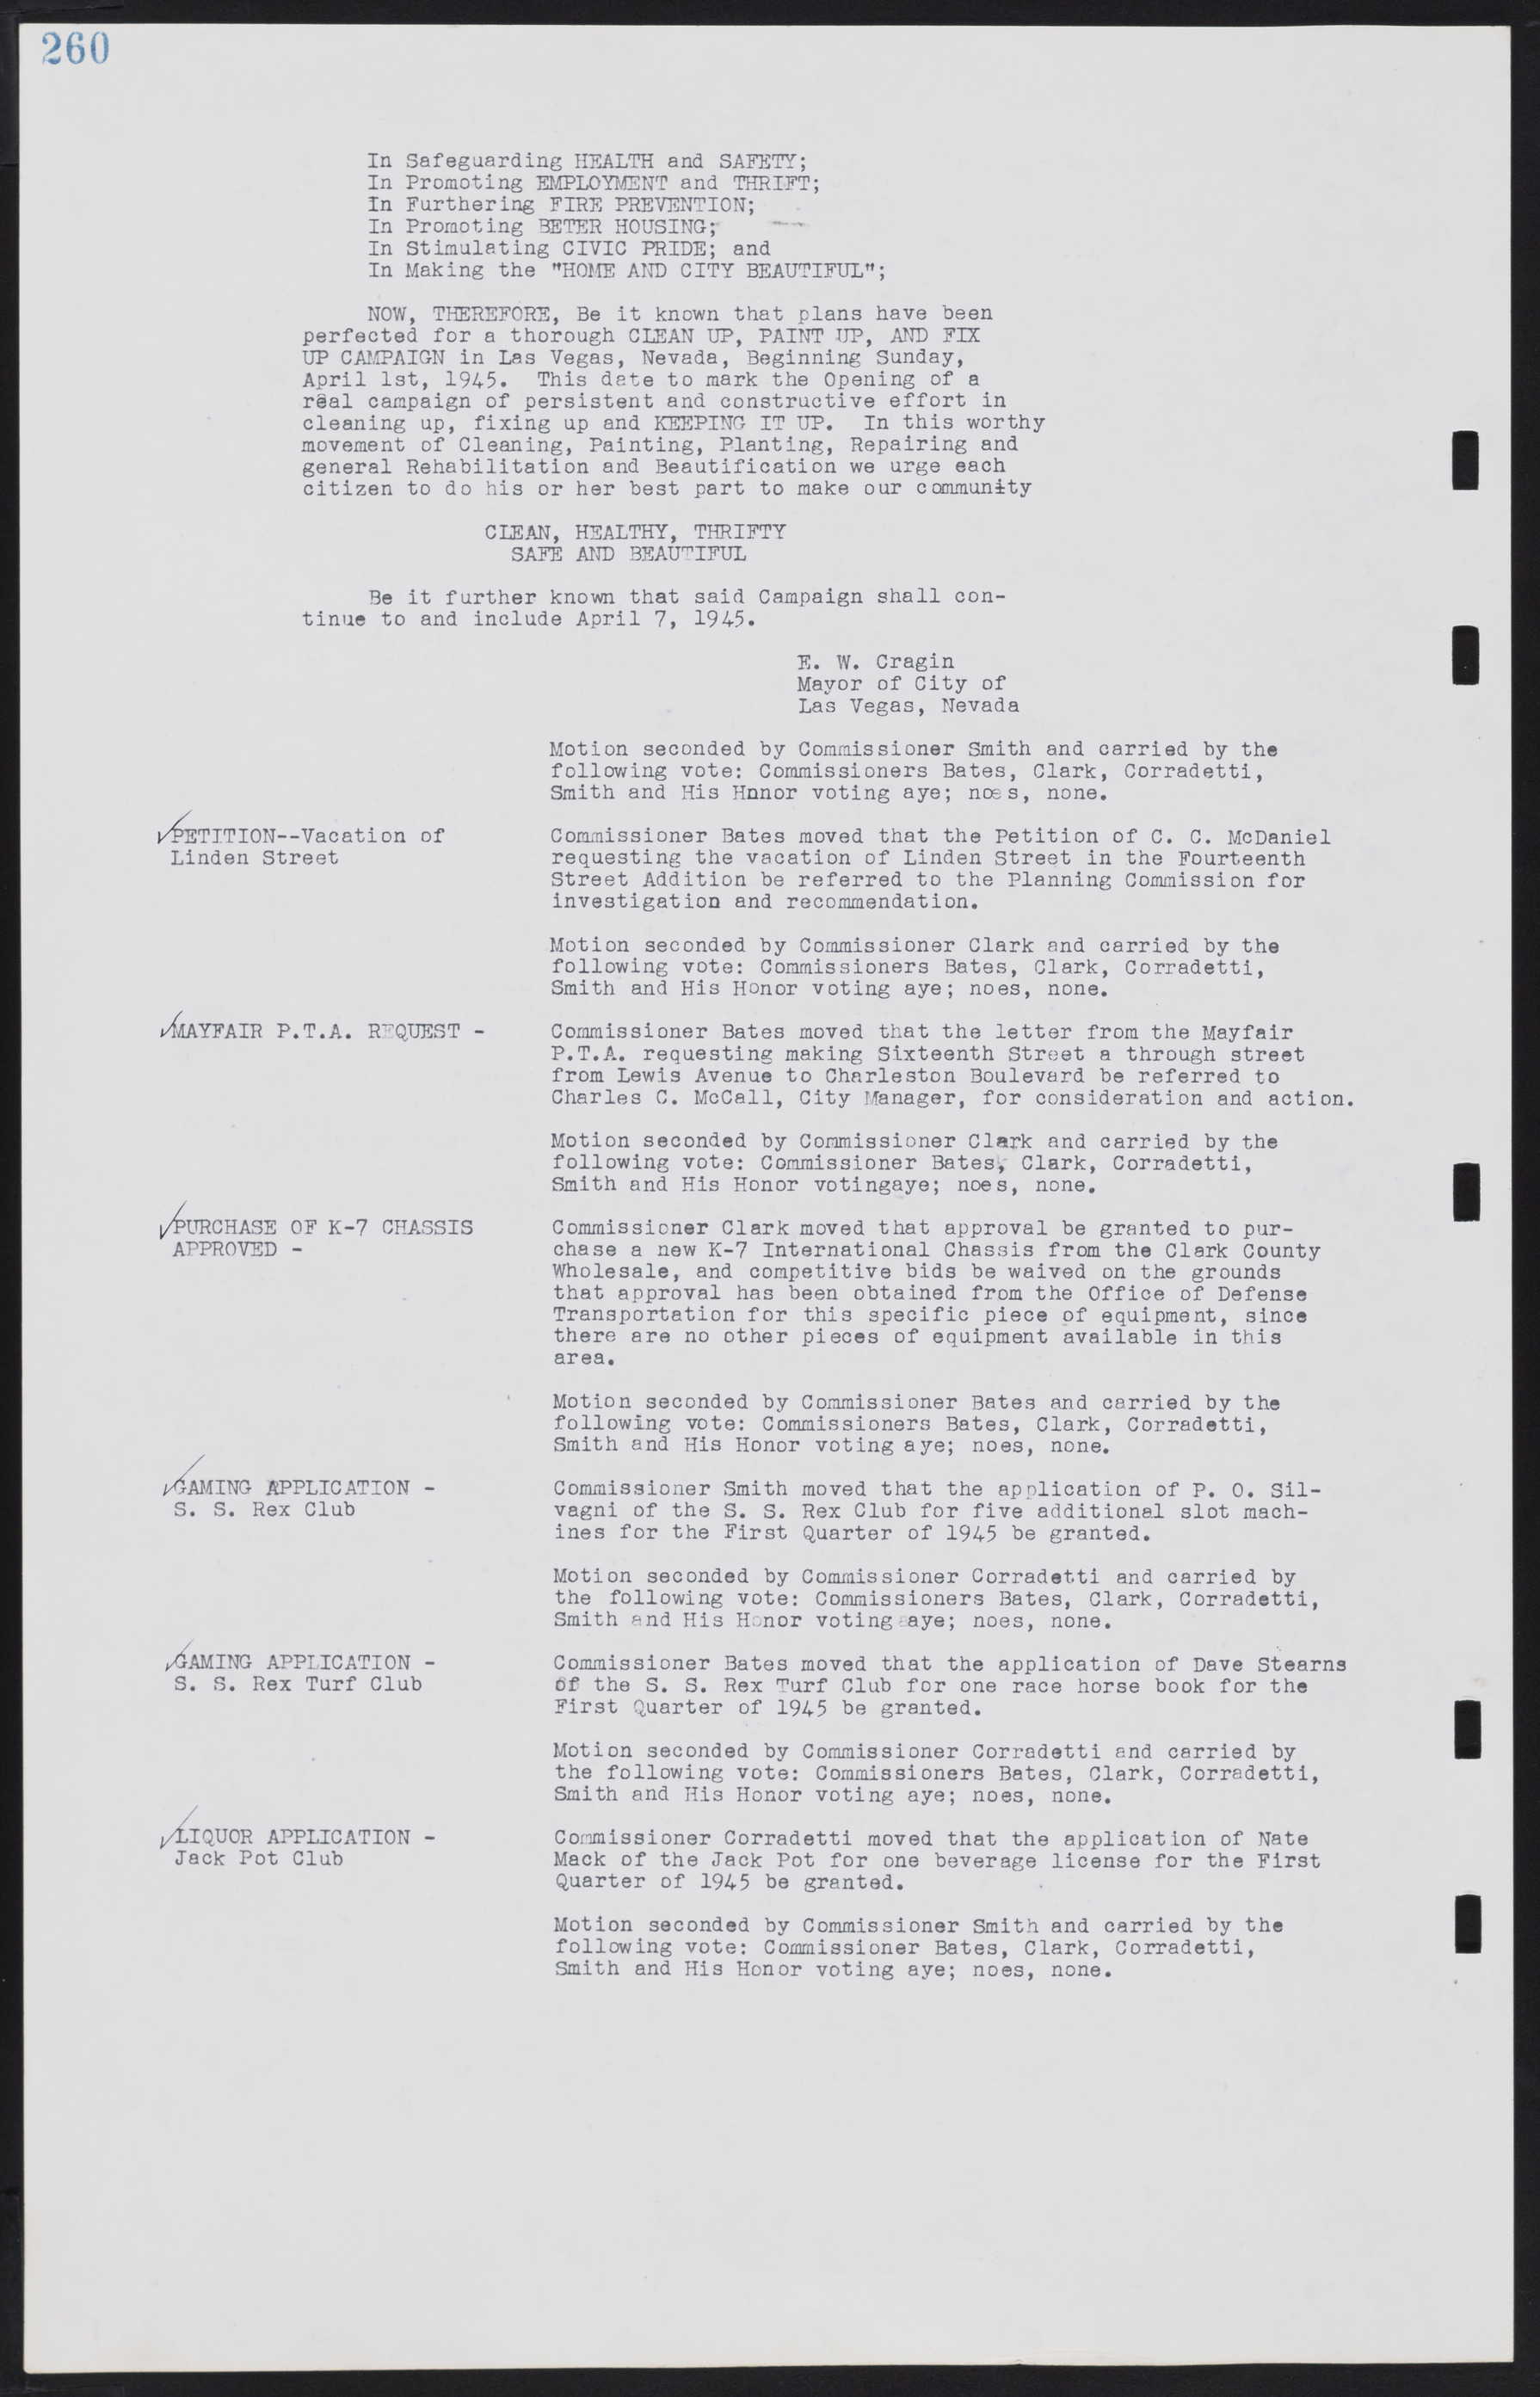 Las Vegas City Commission Minutes, August 11, 1942 to December 30, 1946, lvc000005-282